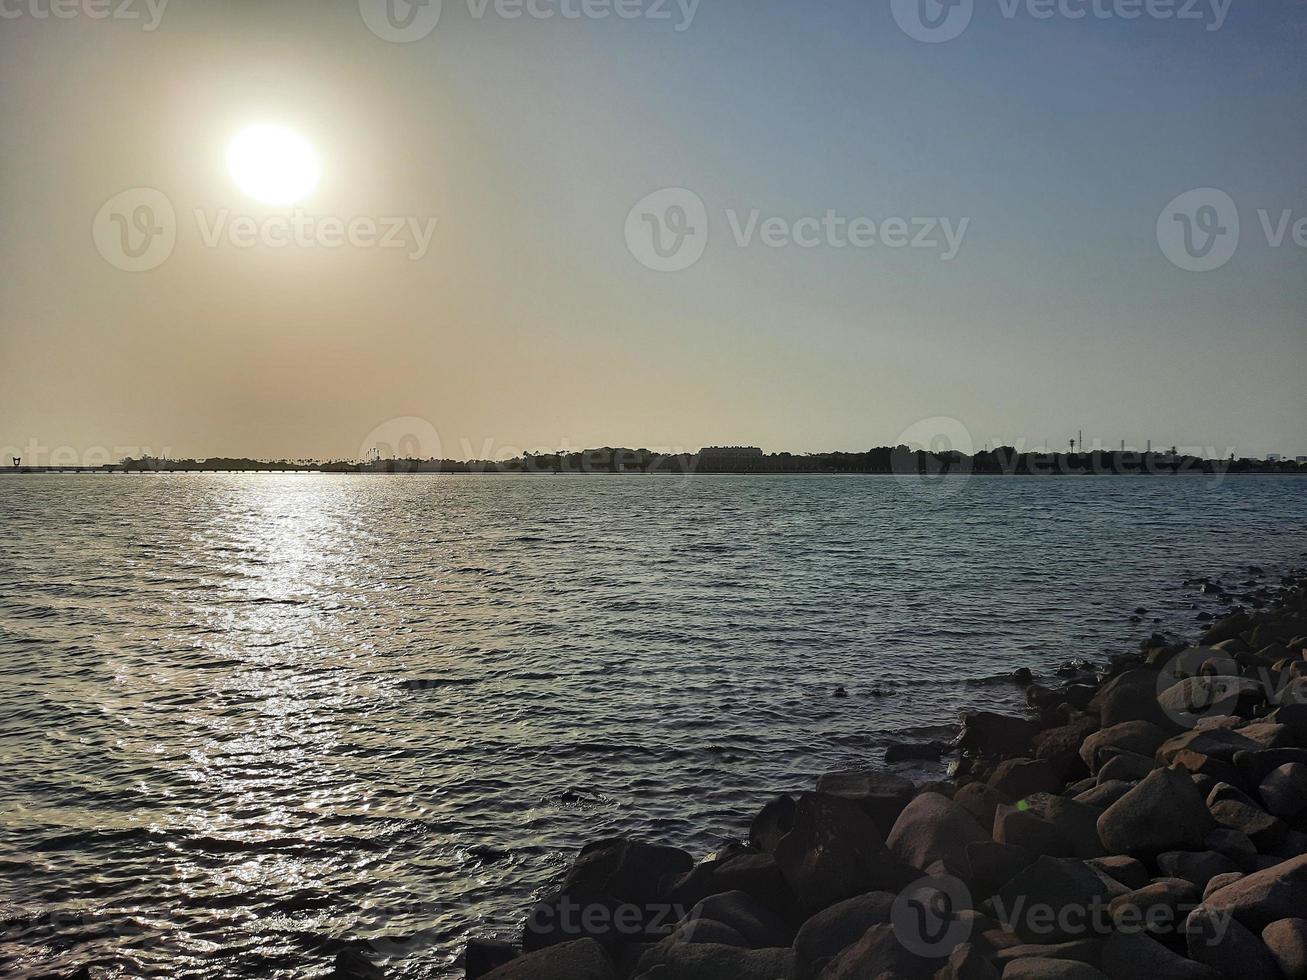 beau coucher de soleil à jeddah, corniche. la corniche de jeddah, également connue sous le nom de front de mer de jeddah, est une zone côtière de la ville de jeddah, en arabie saoudite. situé le long de la mer rouge. photo